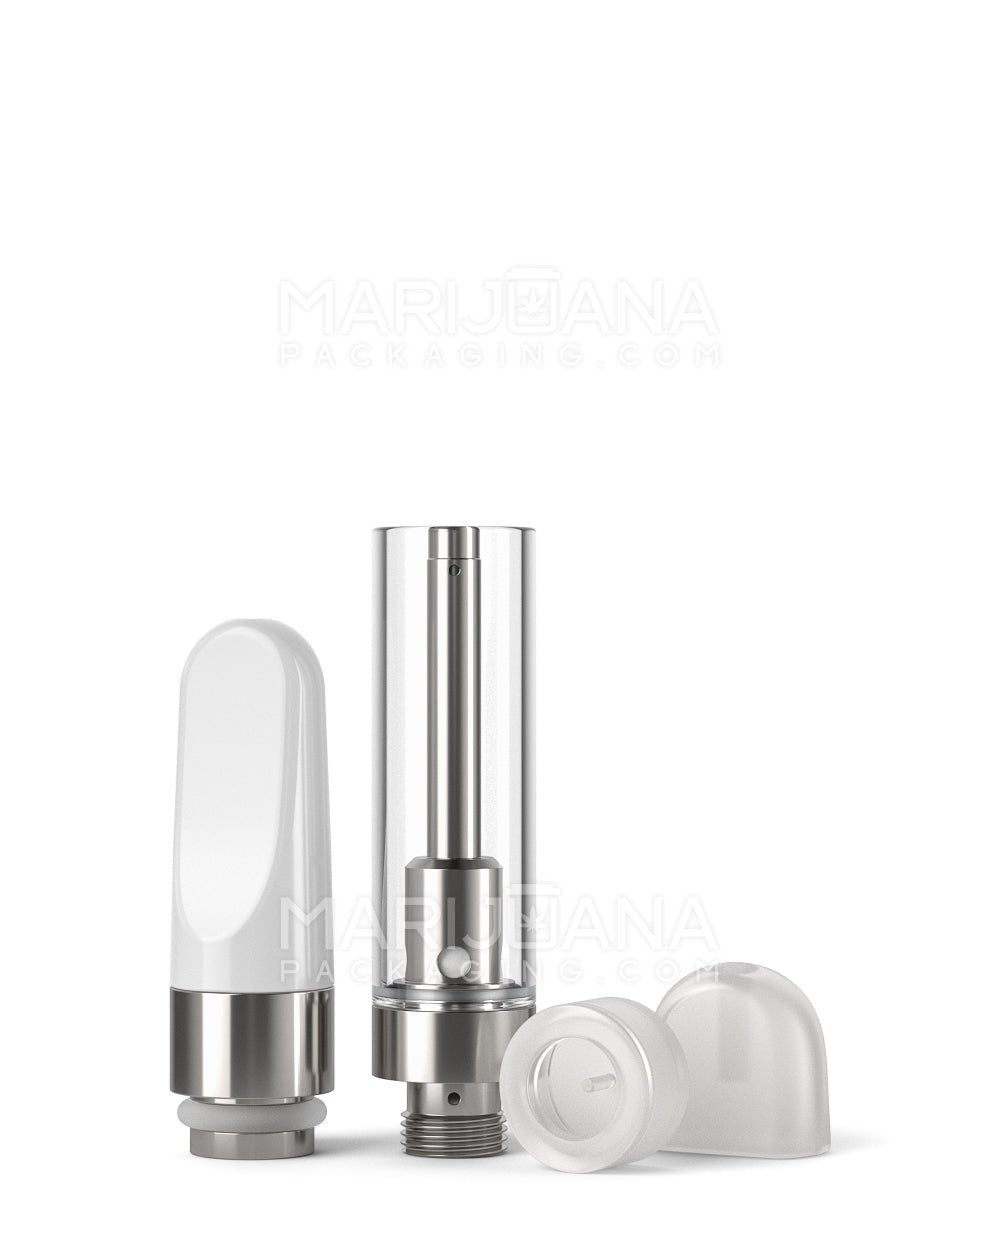 uKera plastic hand press vape mouthpiece